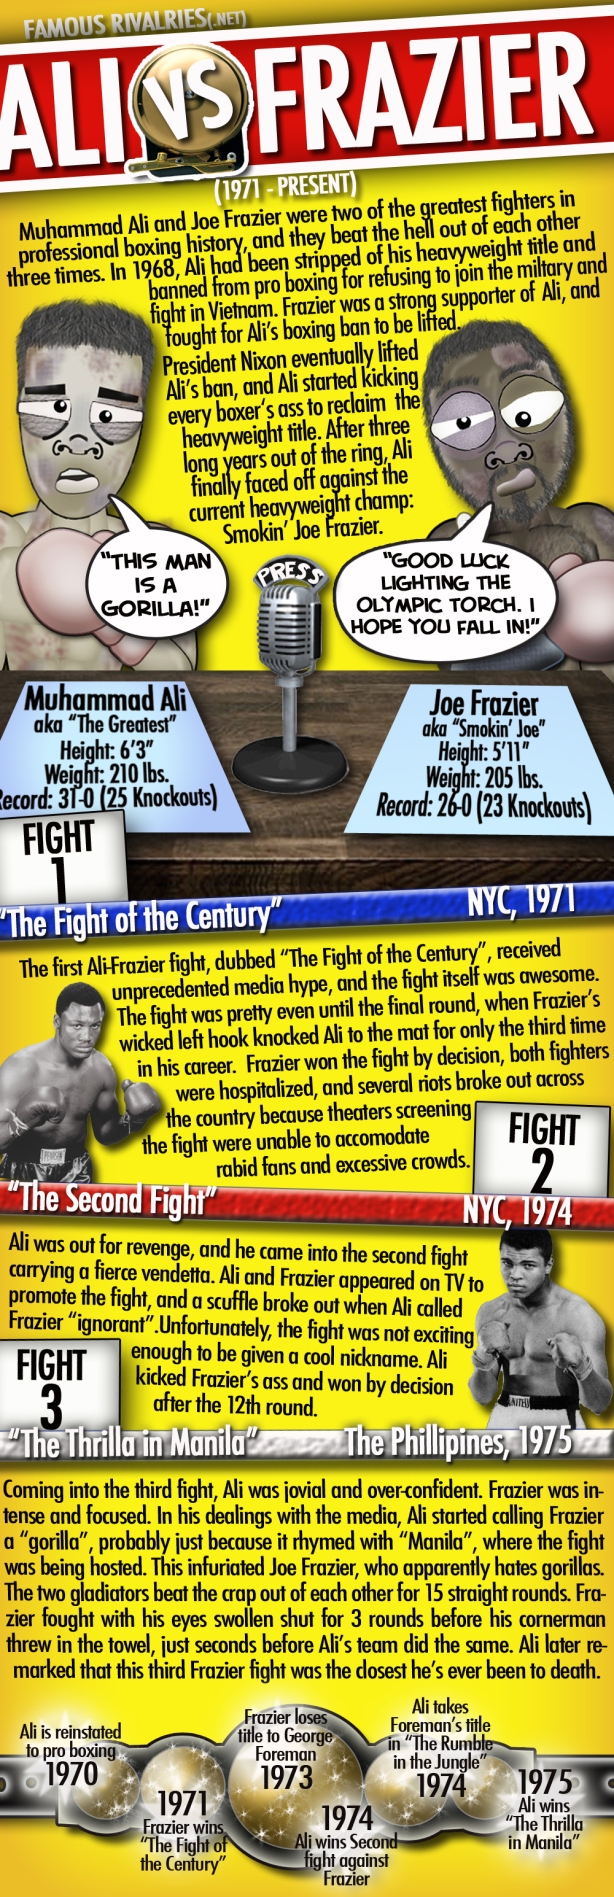 Famous Rivalries Muhammad Ali Joe Frazier Ali vs Frazier Thrilla in Manila Fight of the Century